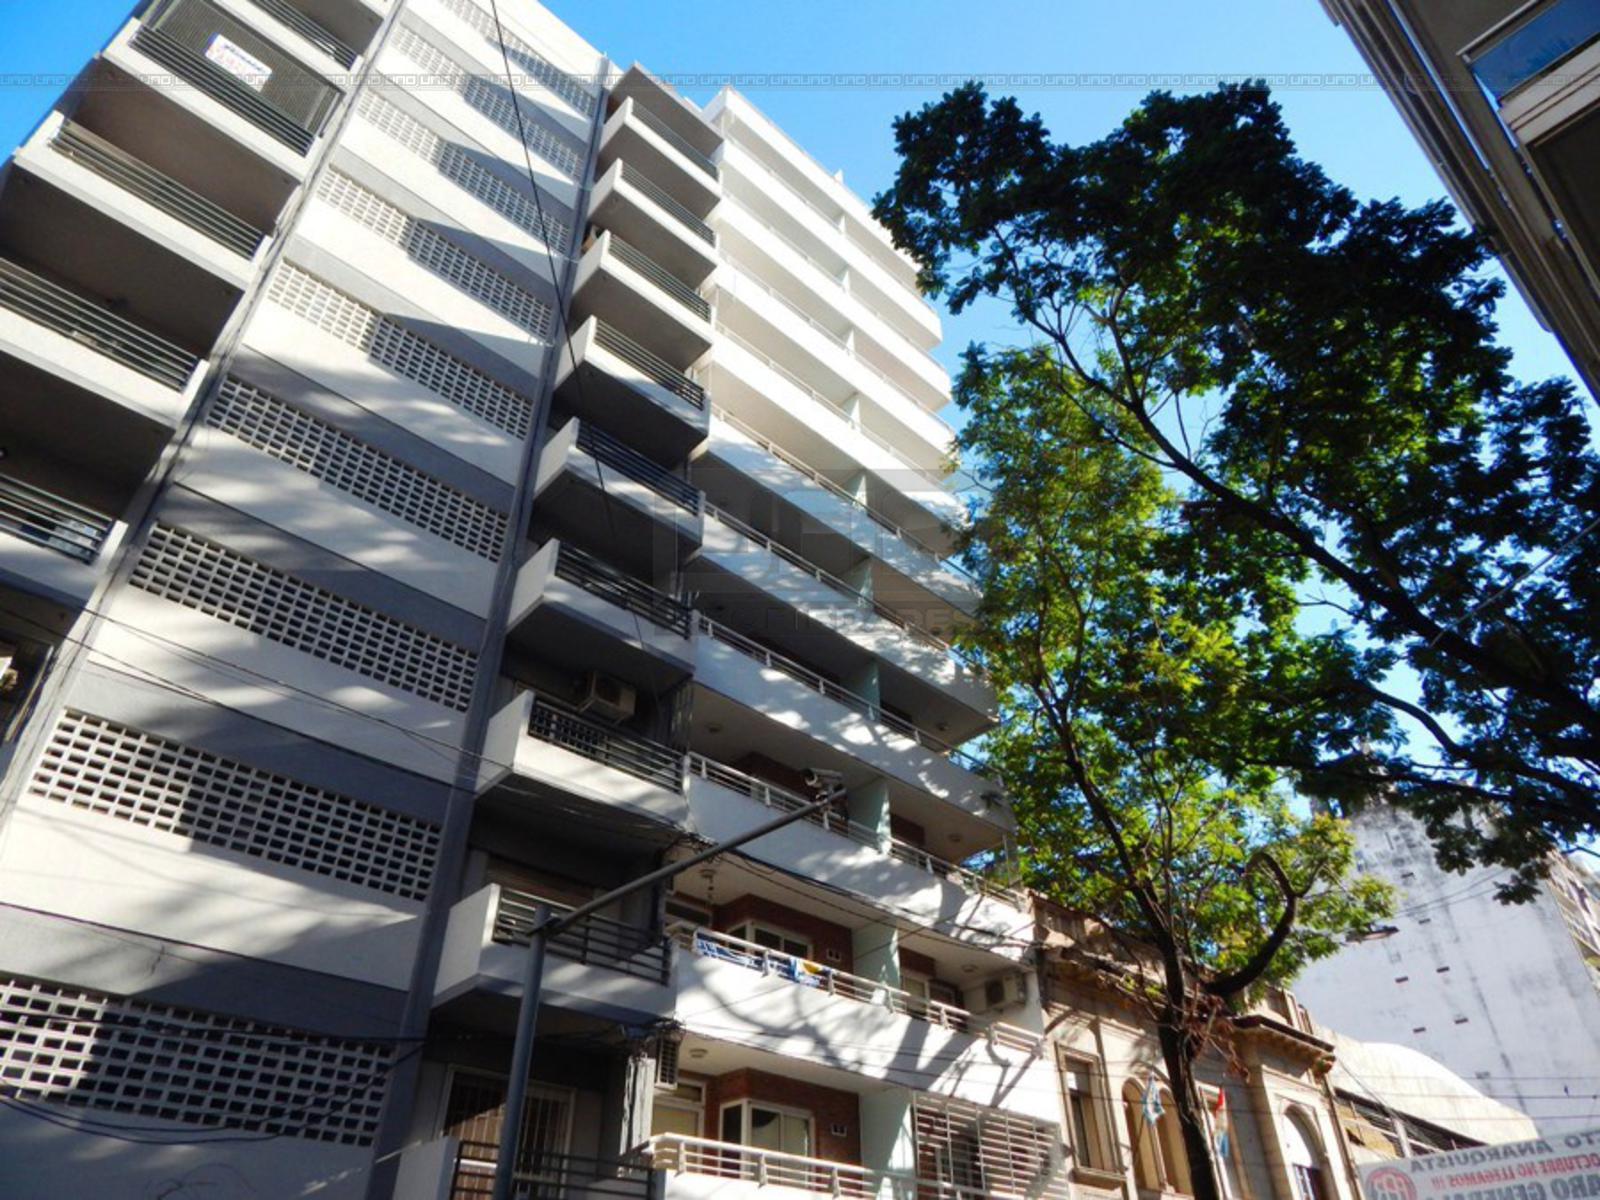 Alquiler departamento 1 dormitorio Rosario, Entre Rios 1478 5º B. Cód 3191. Uno Propiedades